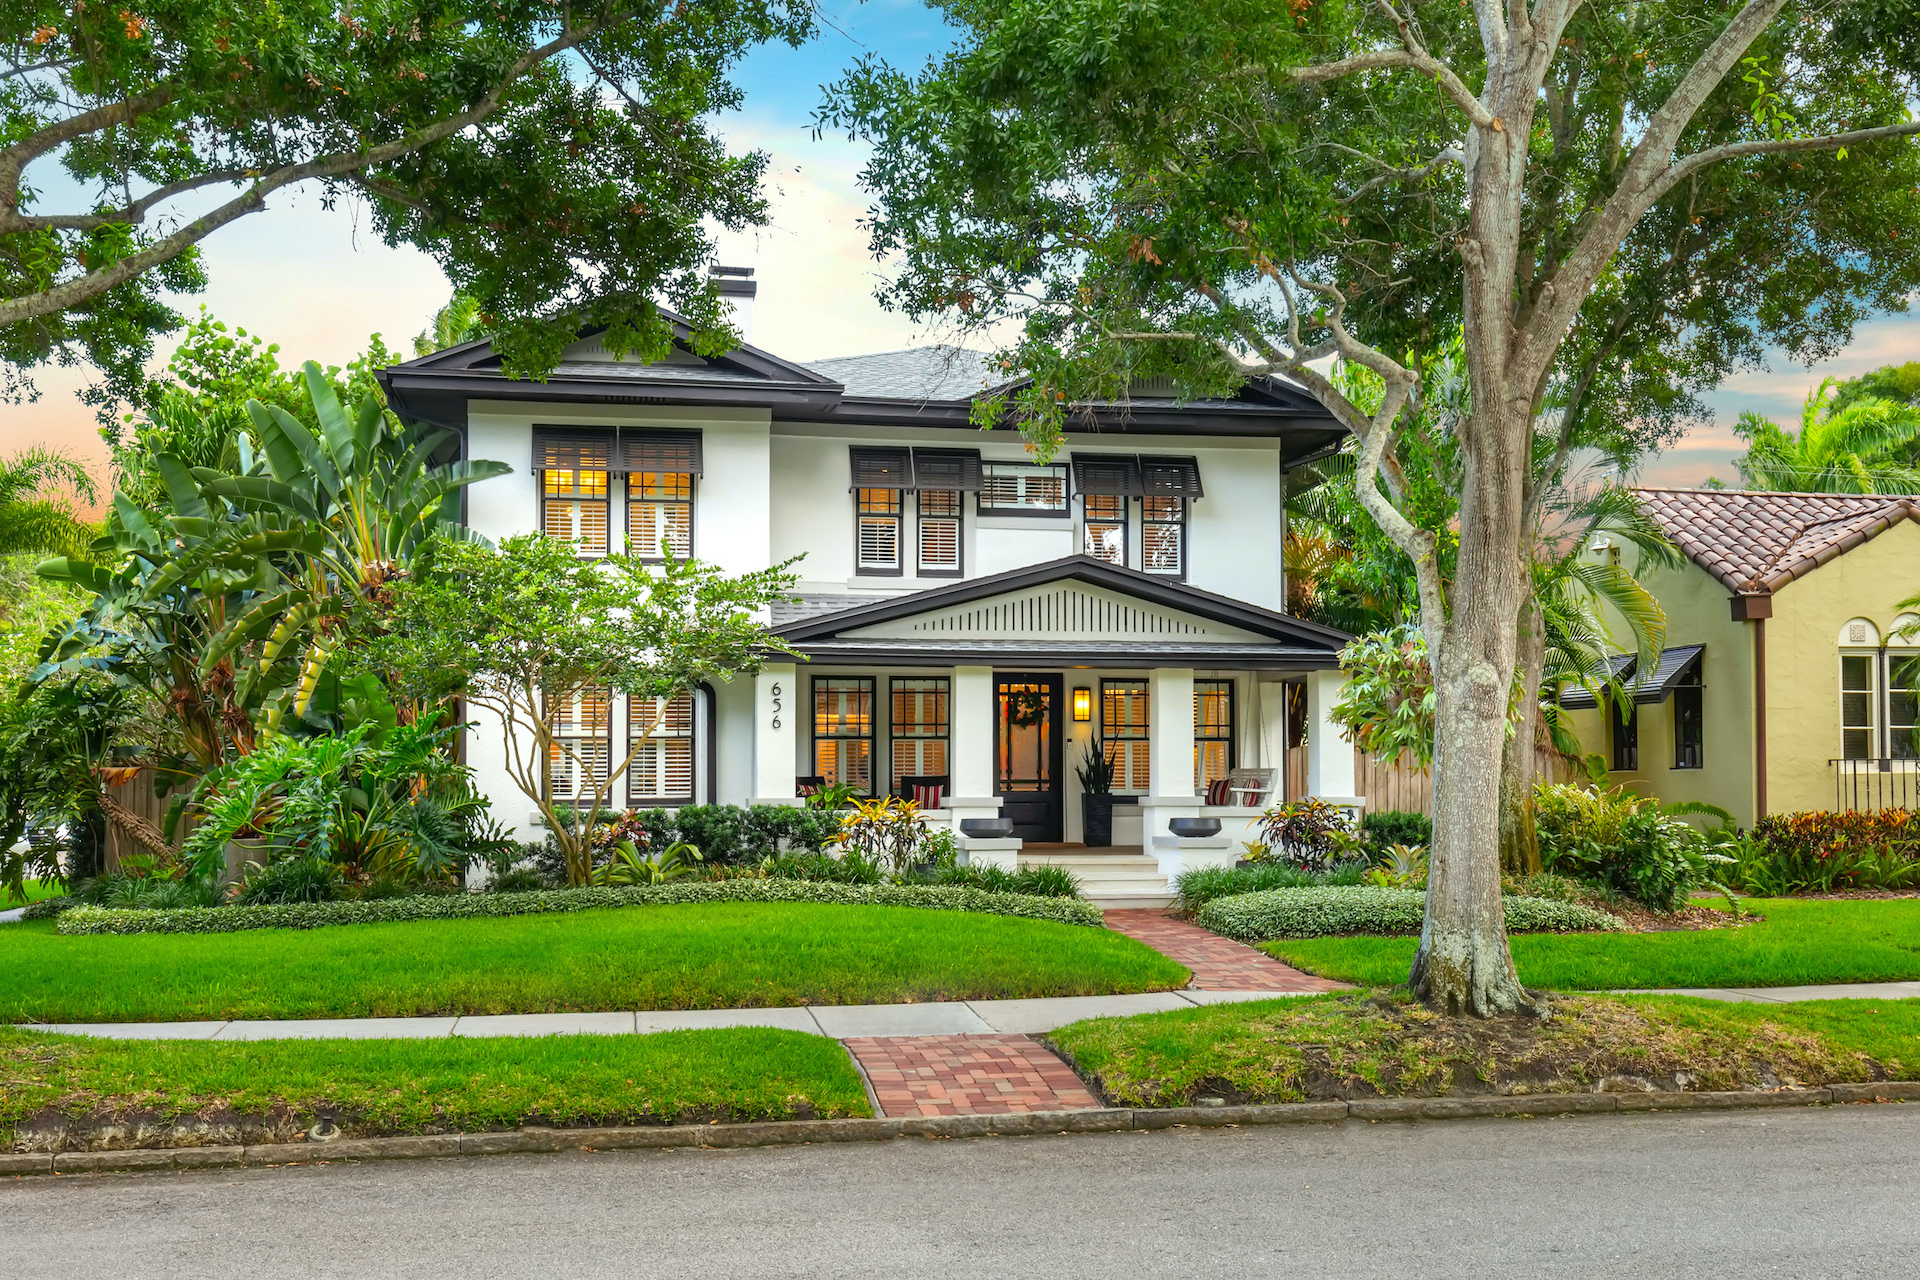 Karen Clemente | Smith & Associates Real Estate | REALTOR | Home